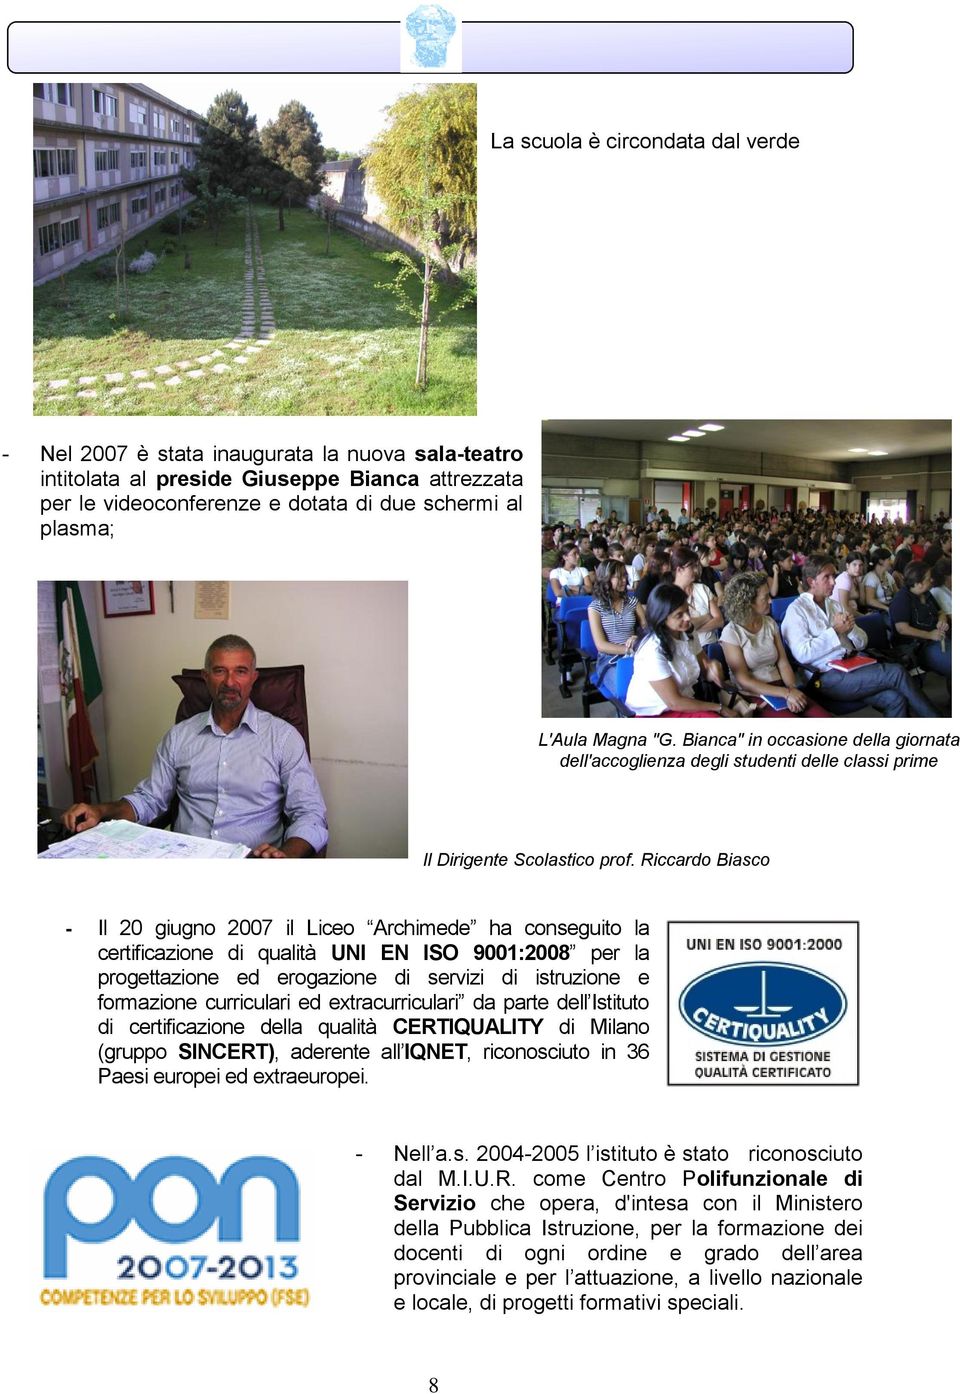 Riccardo Biasco - Il 20 giugno 2007 il Liceo Archimede ha conseguito la certificazione di qualità UNI EN ISO 9001:2008 per la progettazione ed erogazione di servizi di istruzione e formazione